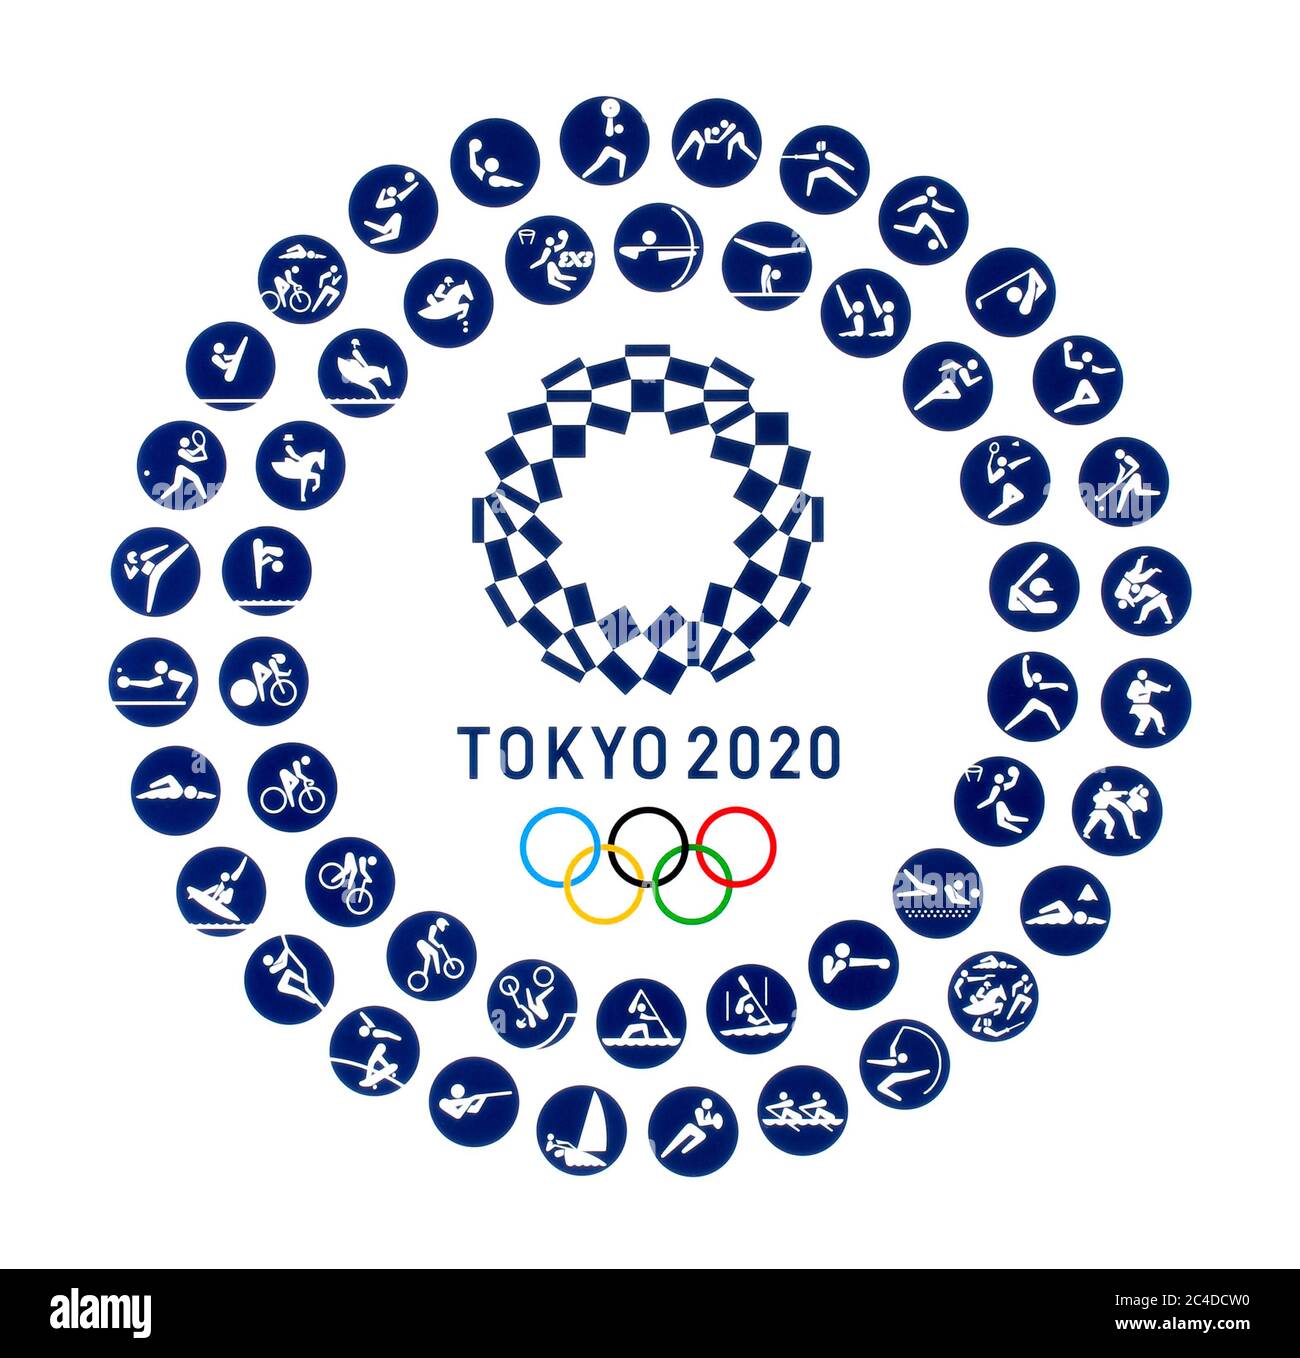 Kiev, Ucraina - 04 ottobre 2019: Logo ufficiale dei Giochi Olimpici estivi 2020 con icone ufficiali di tipi di sport a Tokyo, Giappone, dal 24 luglio t Foto Stock